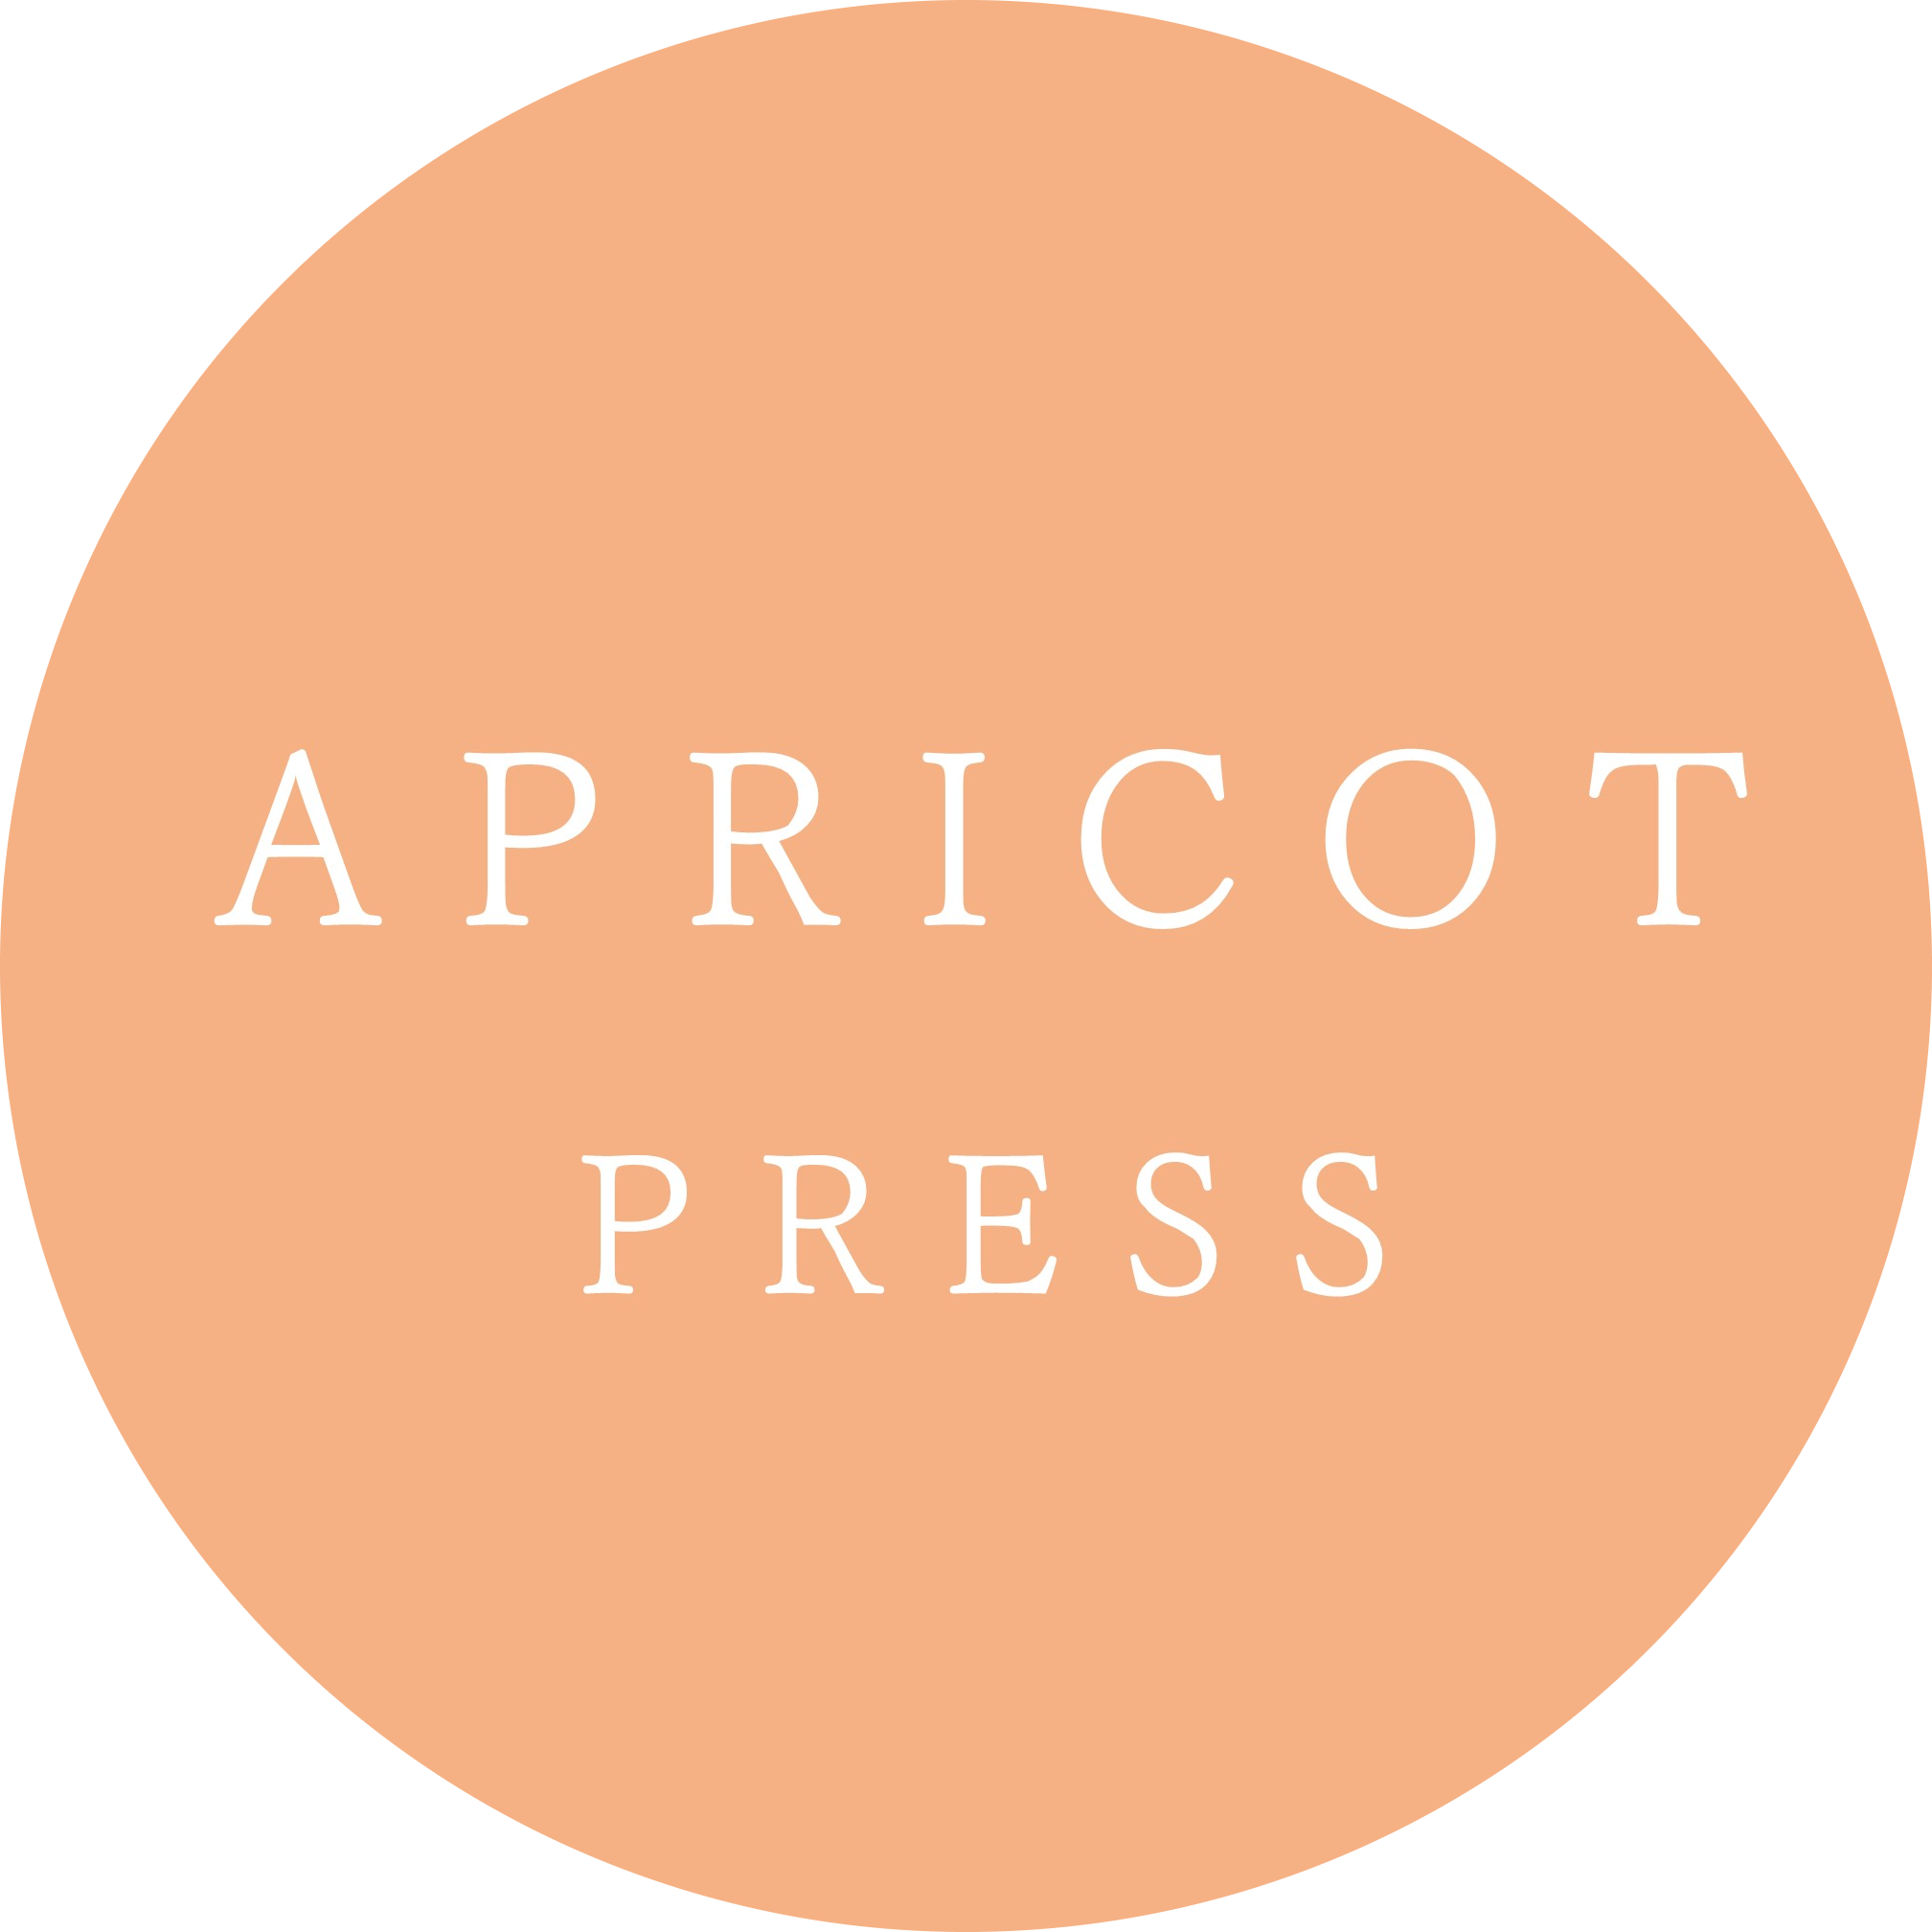 Apricot Press